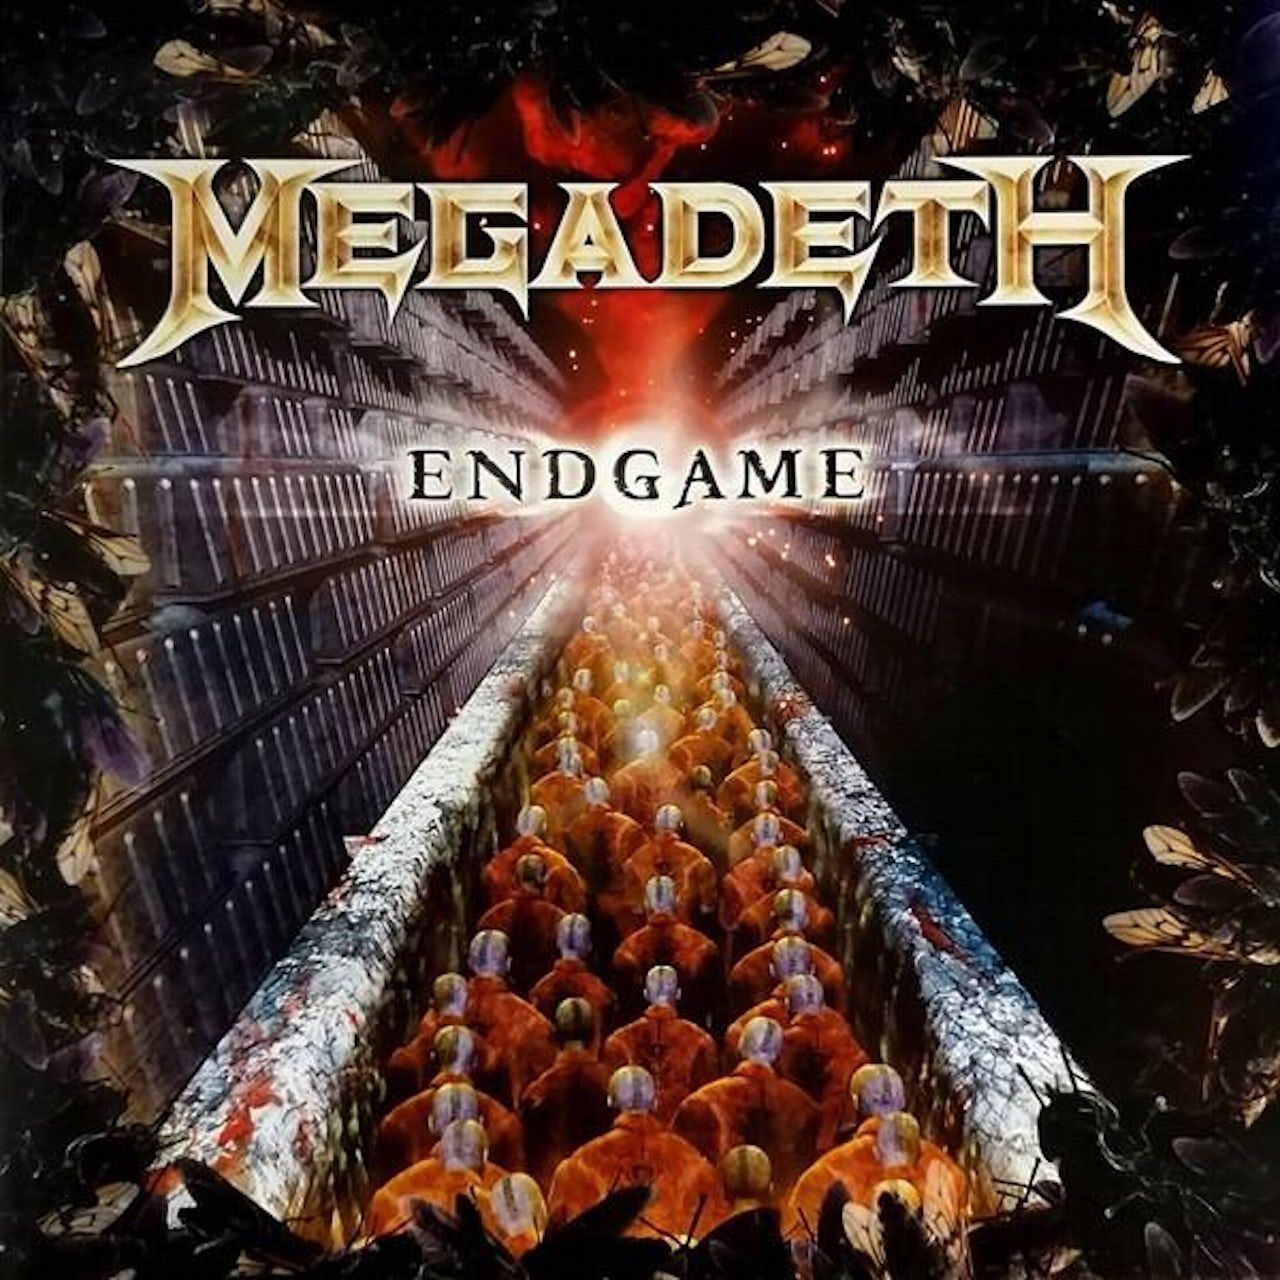 4050538374087, Виниловая пластинка Megadeth, Endgame megadeth виниловая пластинка megadeth th1rt3en